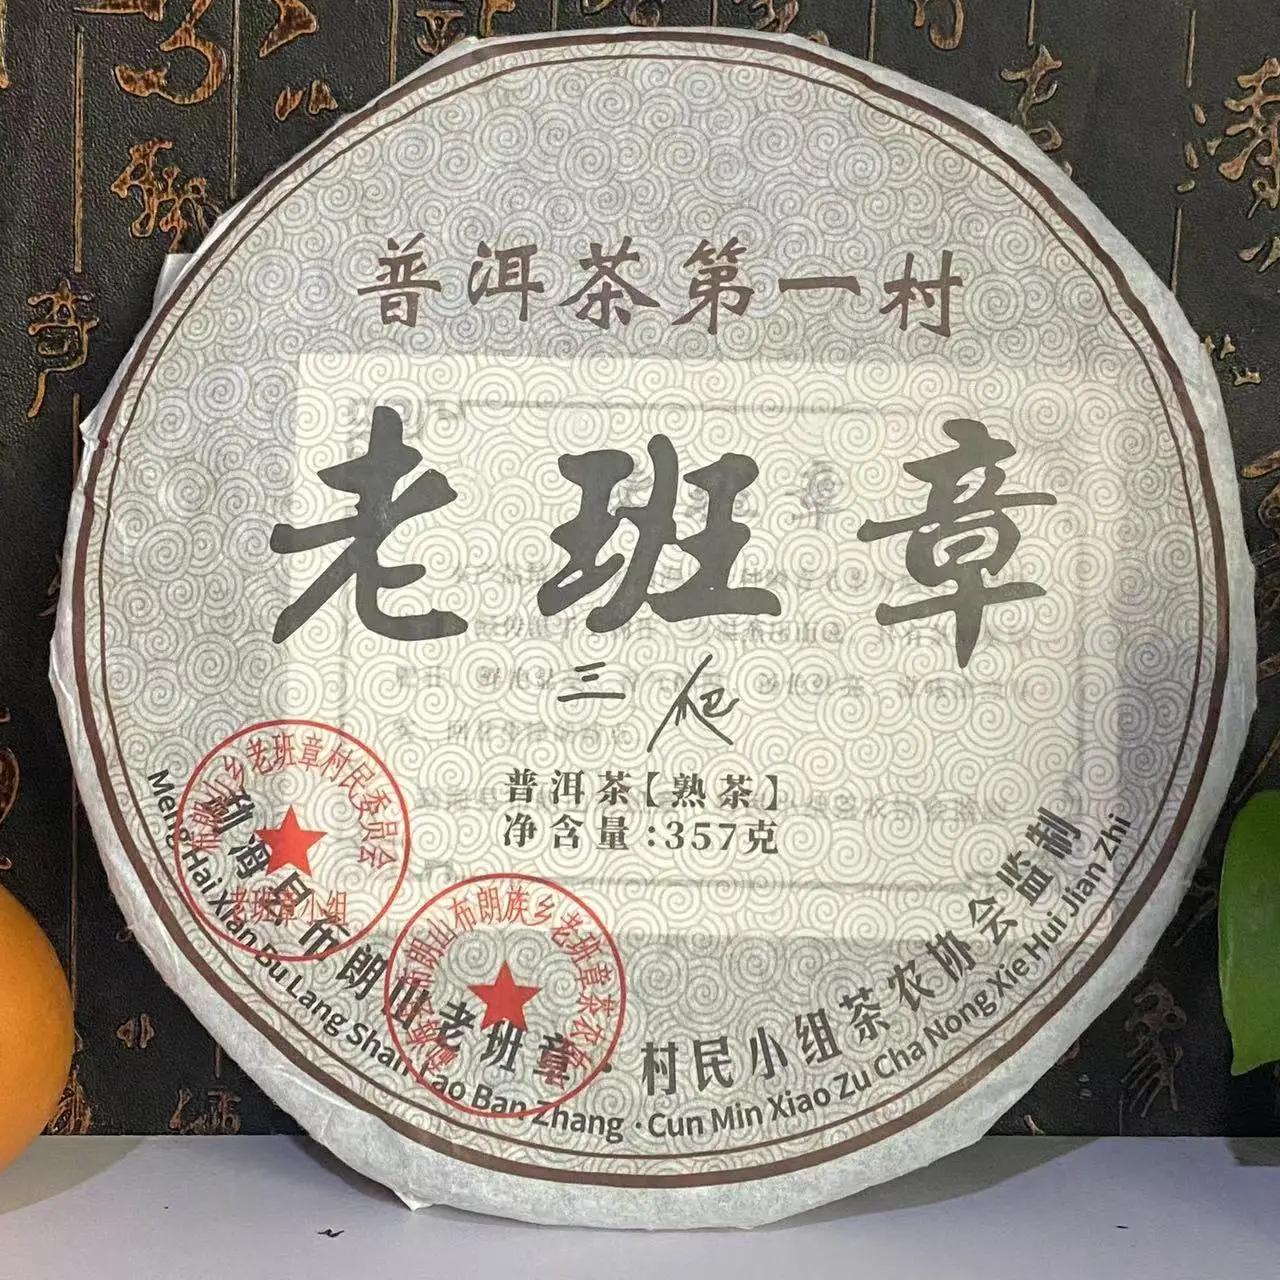   Banzhang   puer tea ,    , puer puerh tea  Ƽ , 357g